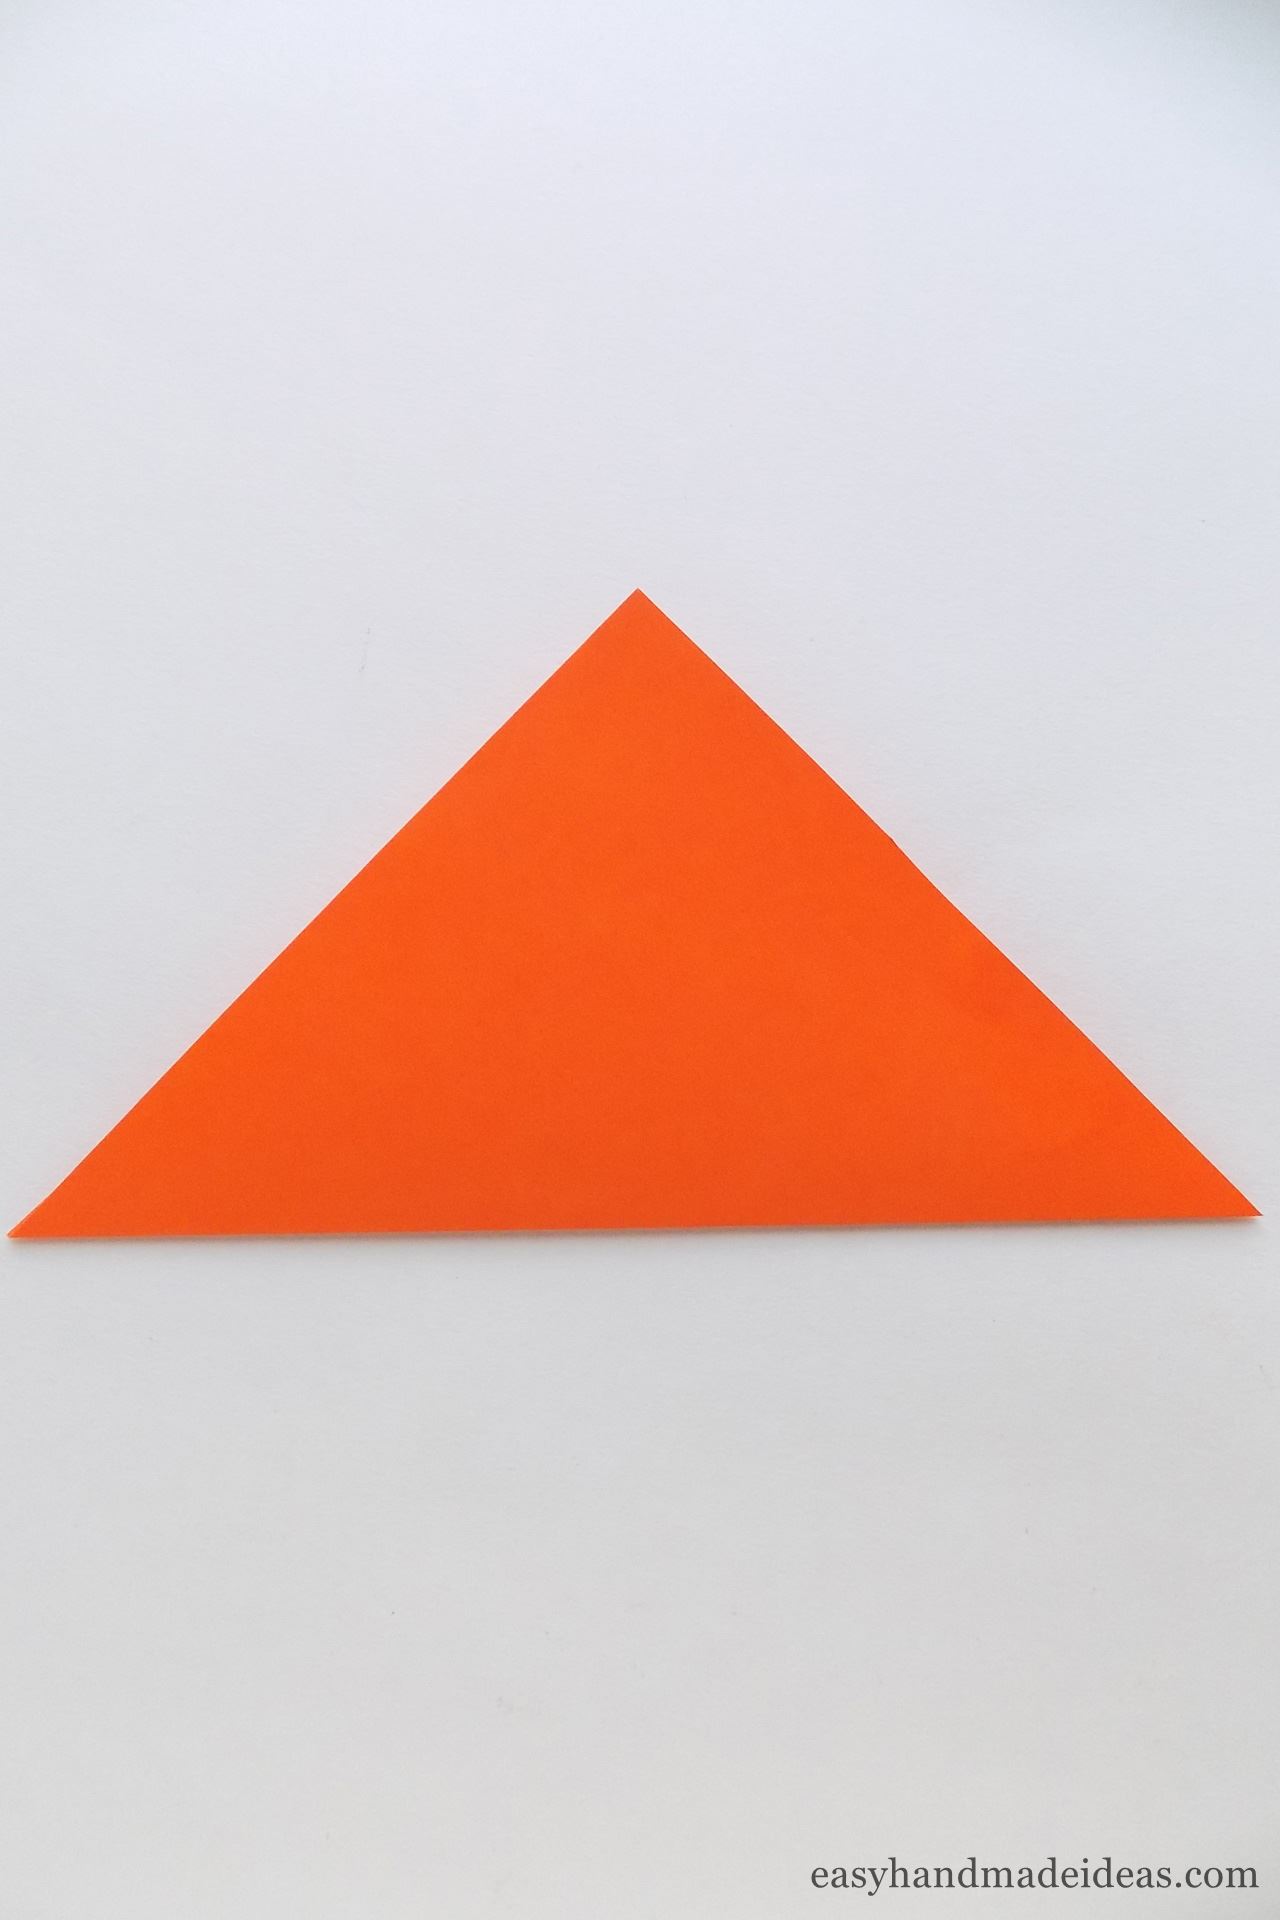 Create a basic Triangle shape